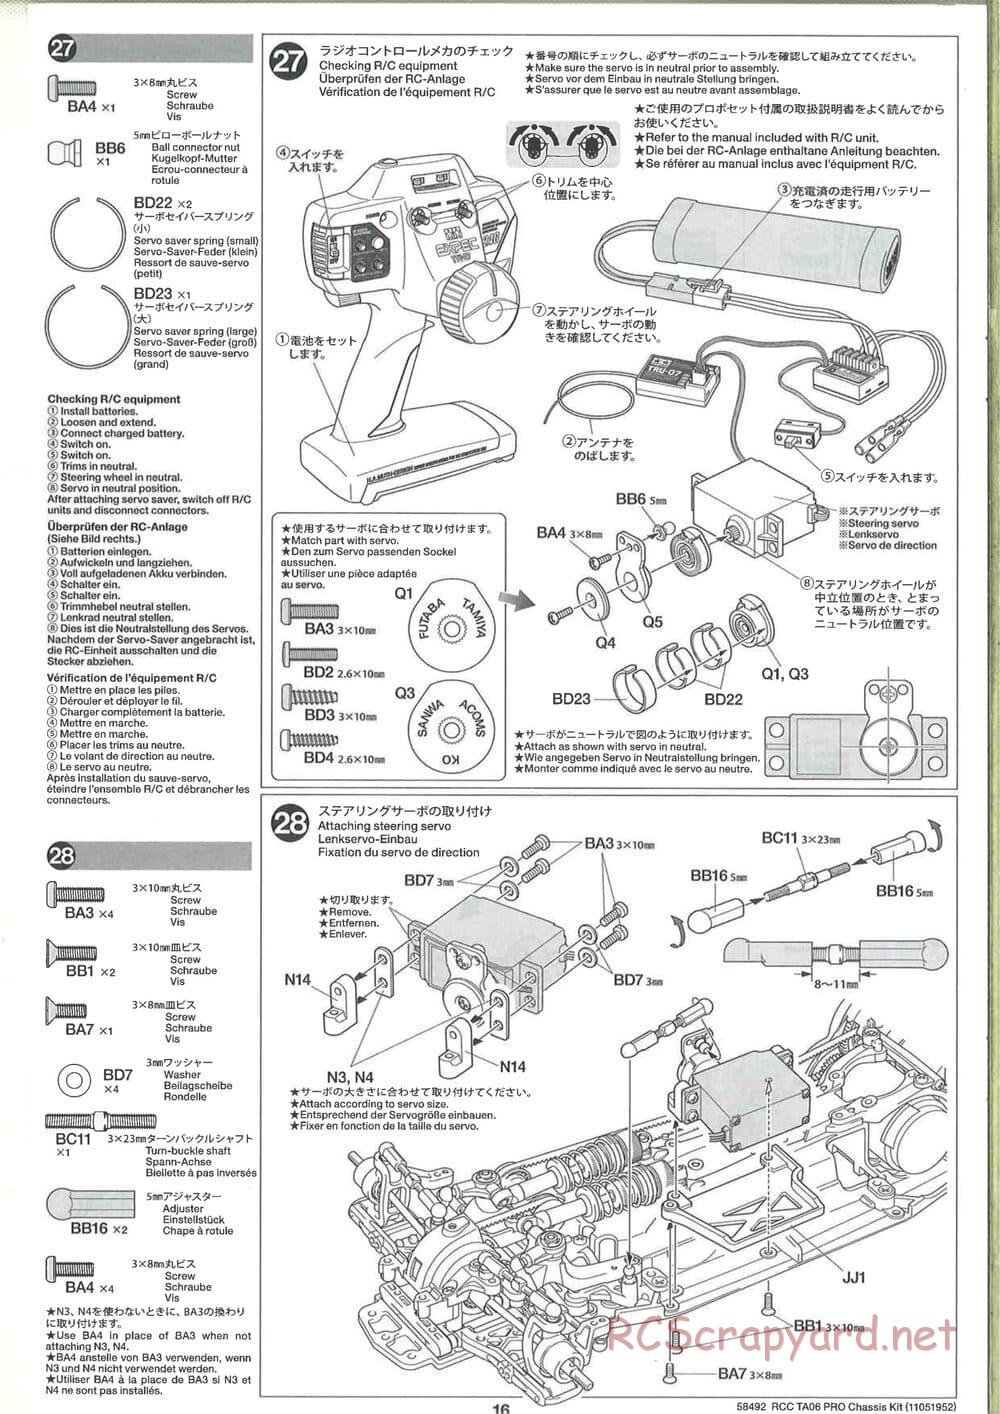 Tamiya - TA06 Pro Chassis - Manual - Page 16